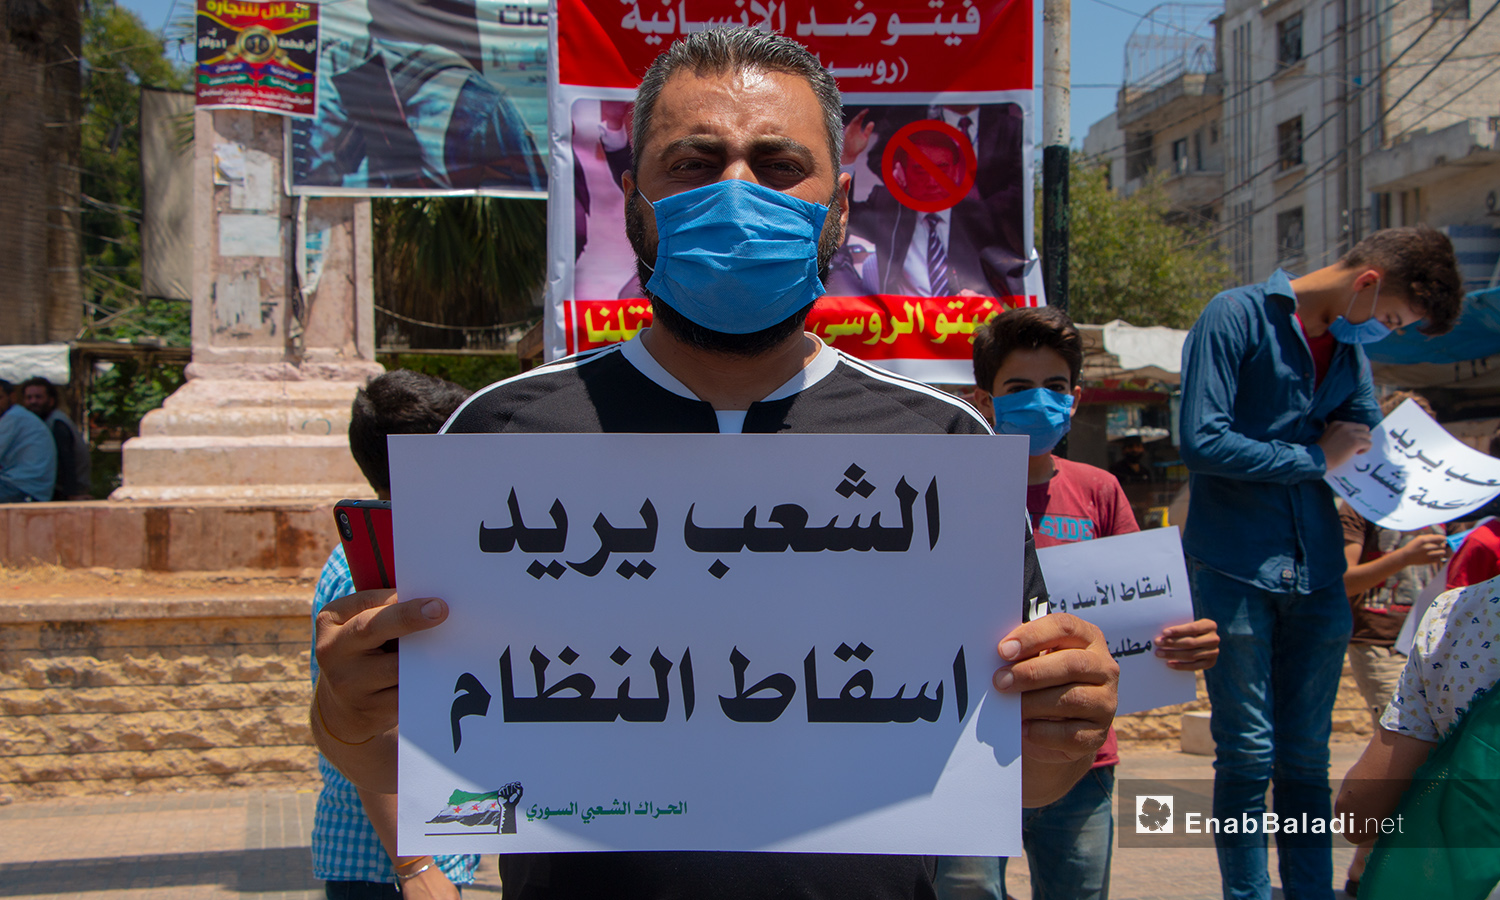 وقفة إحتجاجية في ساحة الساعة في إدلب - 10 تموز 2020 (عنب بلدي/أنس الخولي)